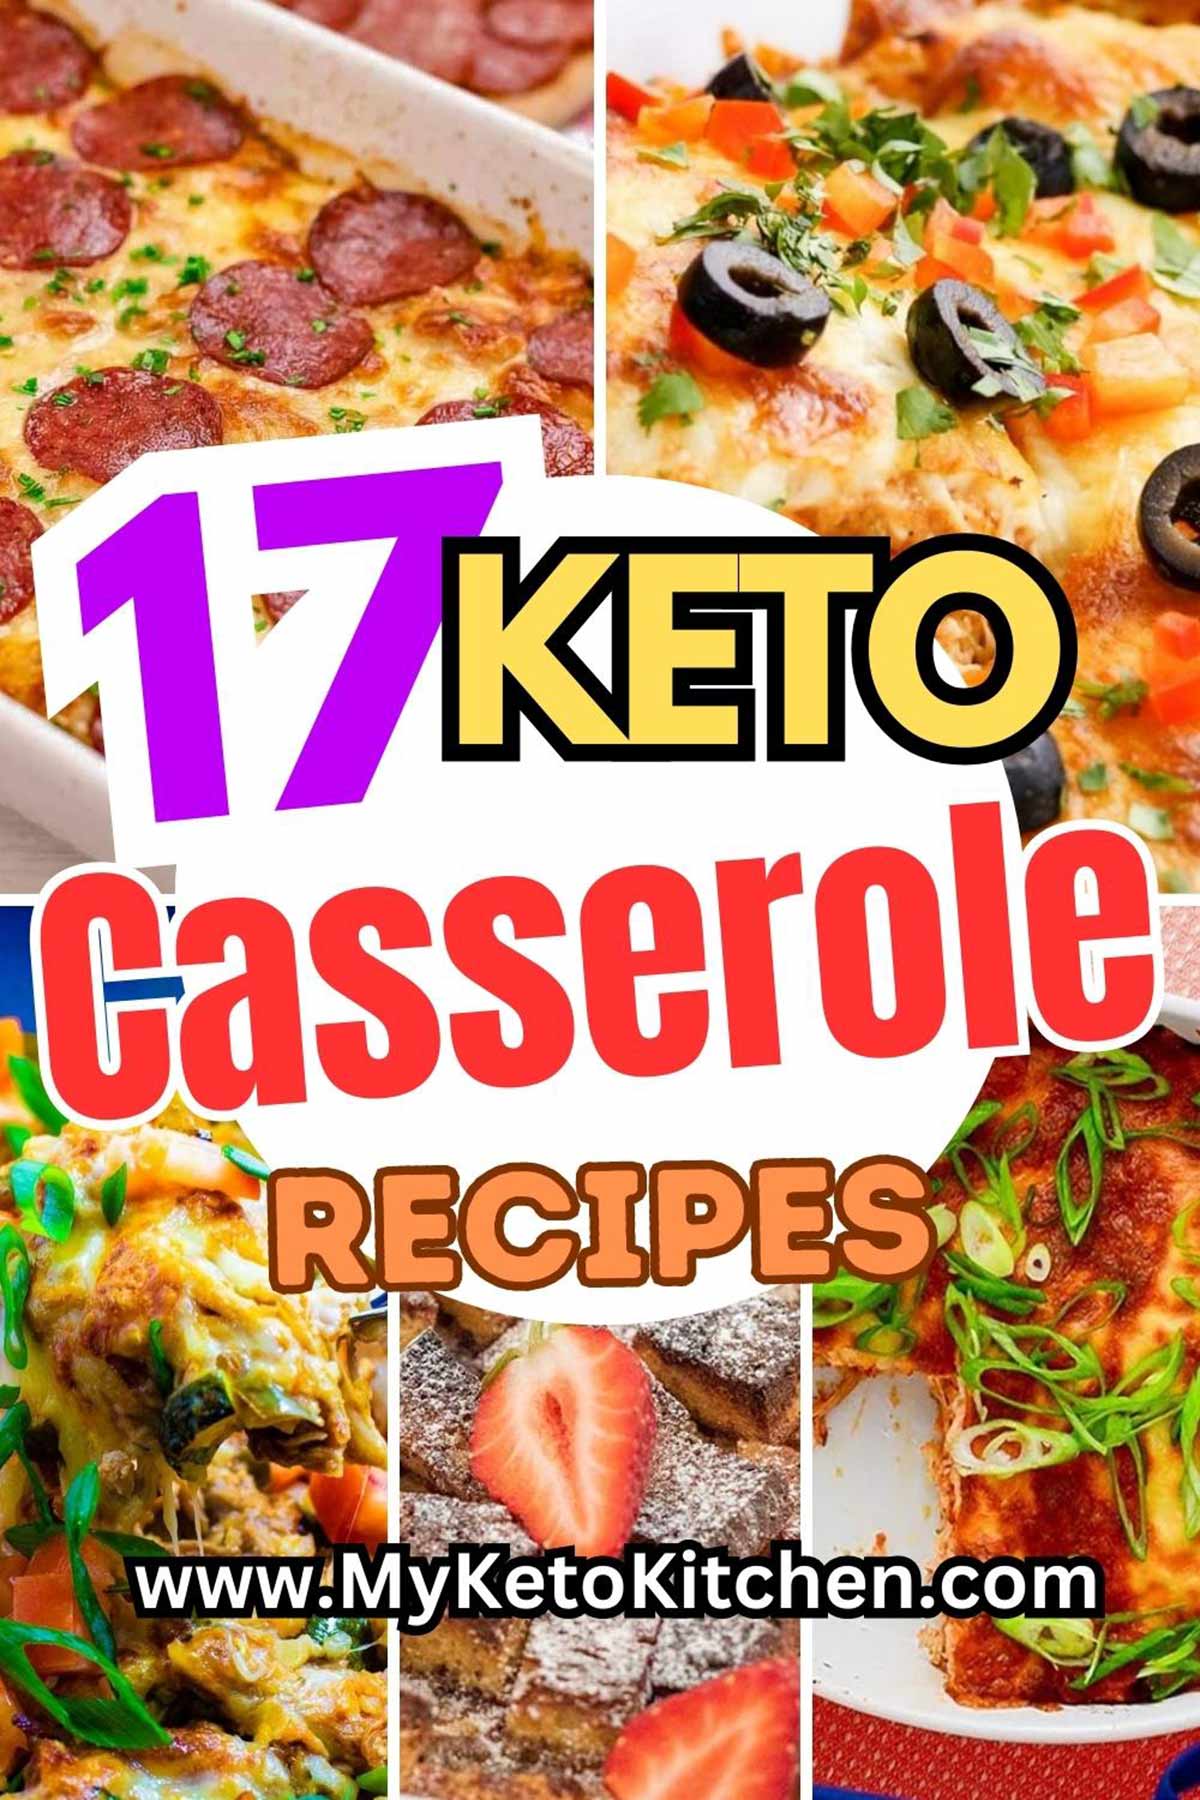 Easy Keto Chicken Broccoli Casserole Bake - Super Cheesy!